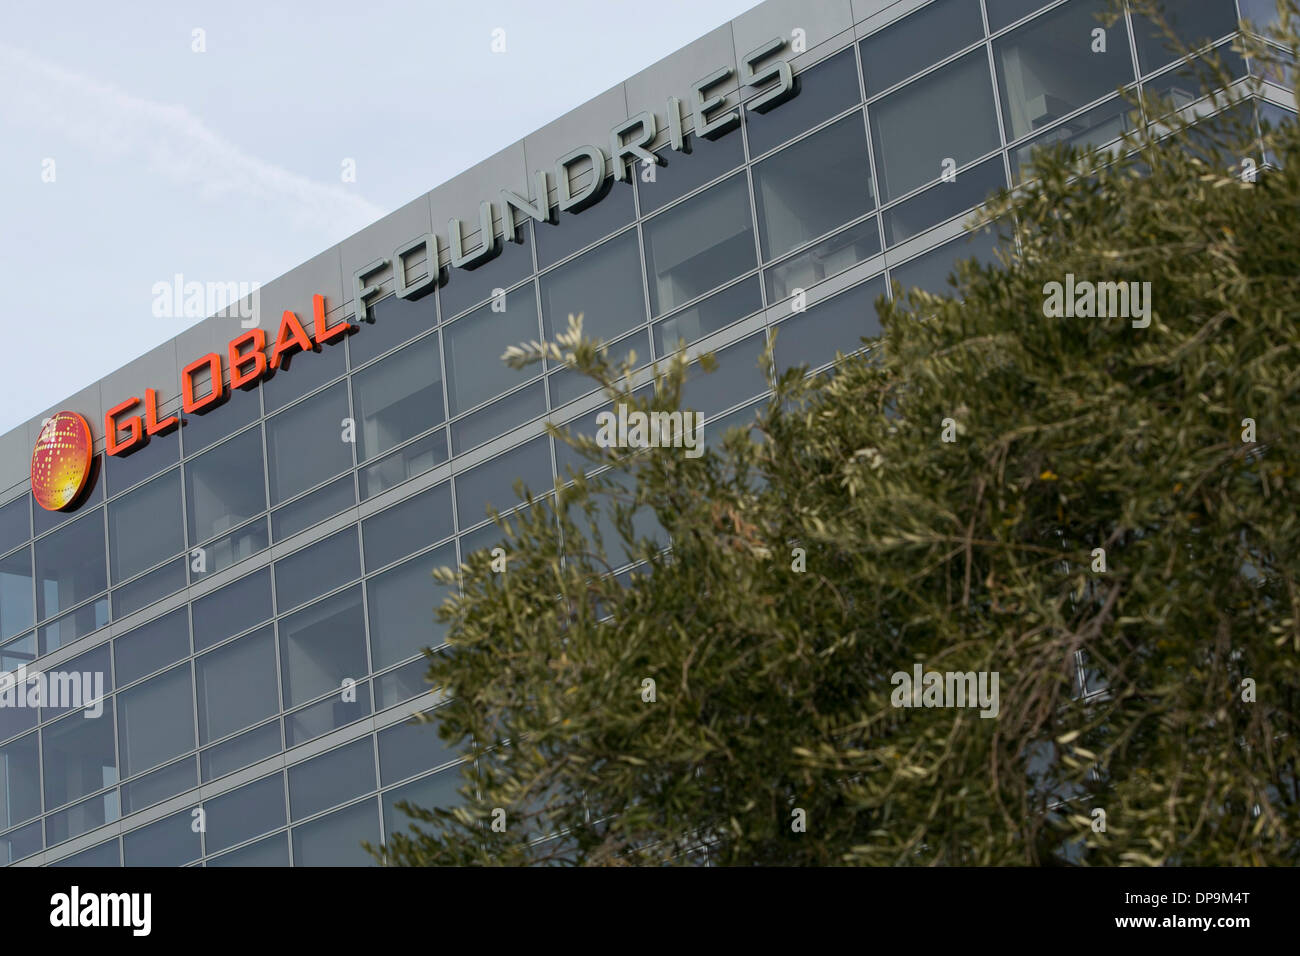 La sede centrale del Global fonderie in Santa Clara, California. Foto Stock